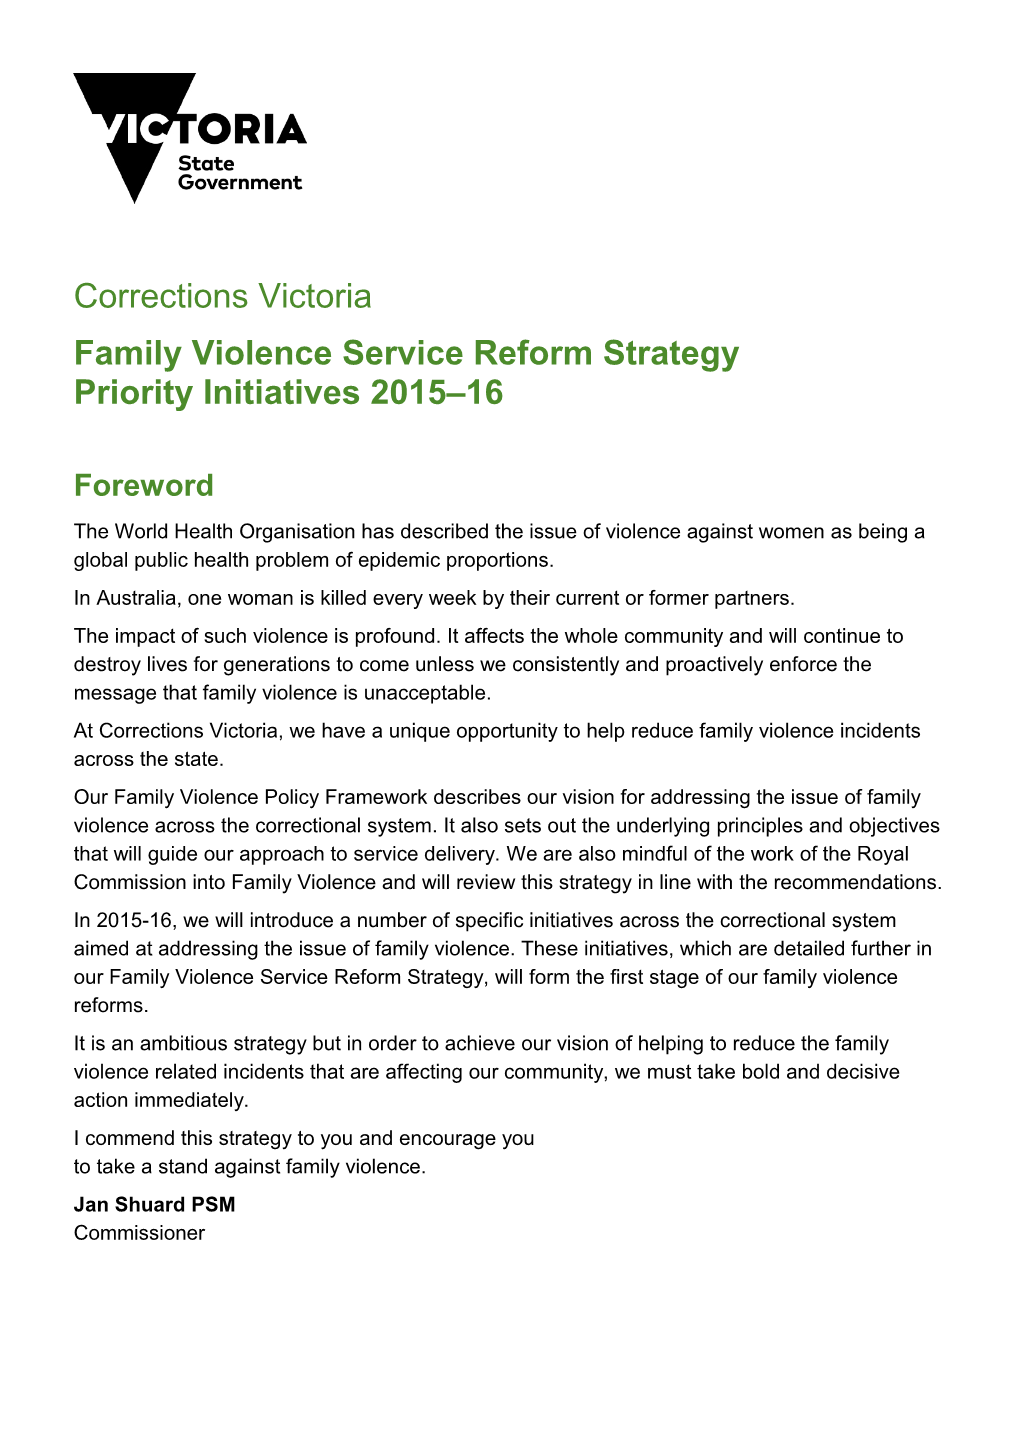 Family Violence Service Reform Strategy